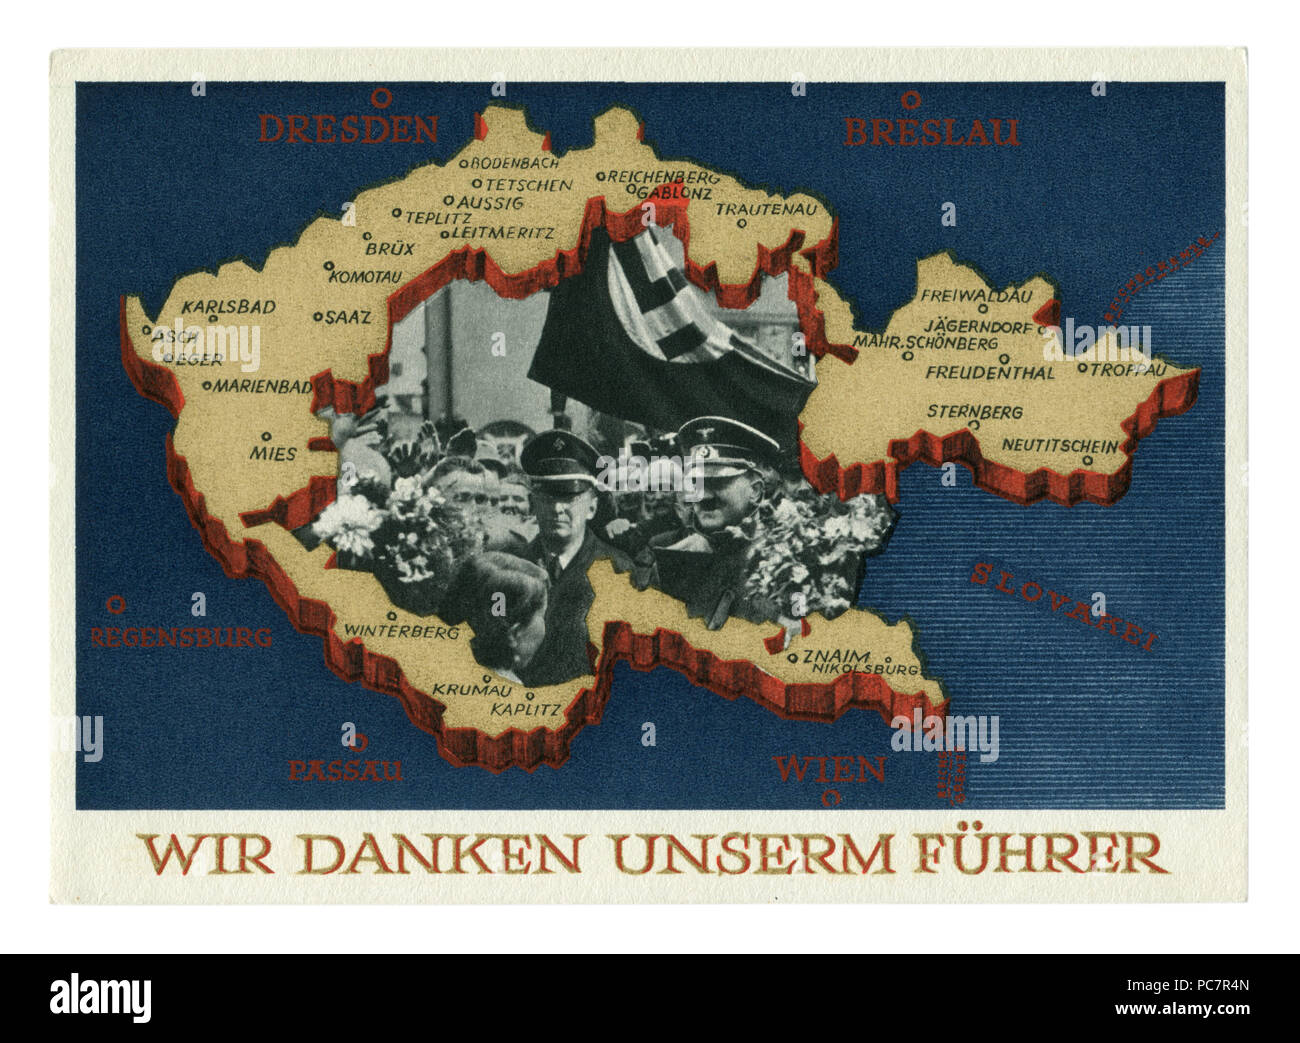 Carte postale historique allemand : Référendum sur l'adhésion de la région des Sudètes. L'annexion de certaines parties de la Tchécoslovaquie. 29 septembre 1938, Allemagne Banque D'Images